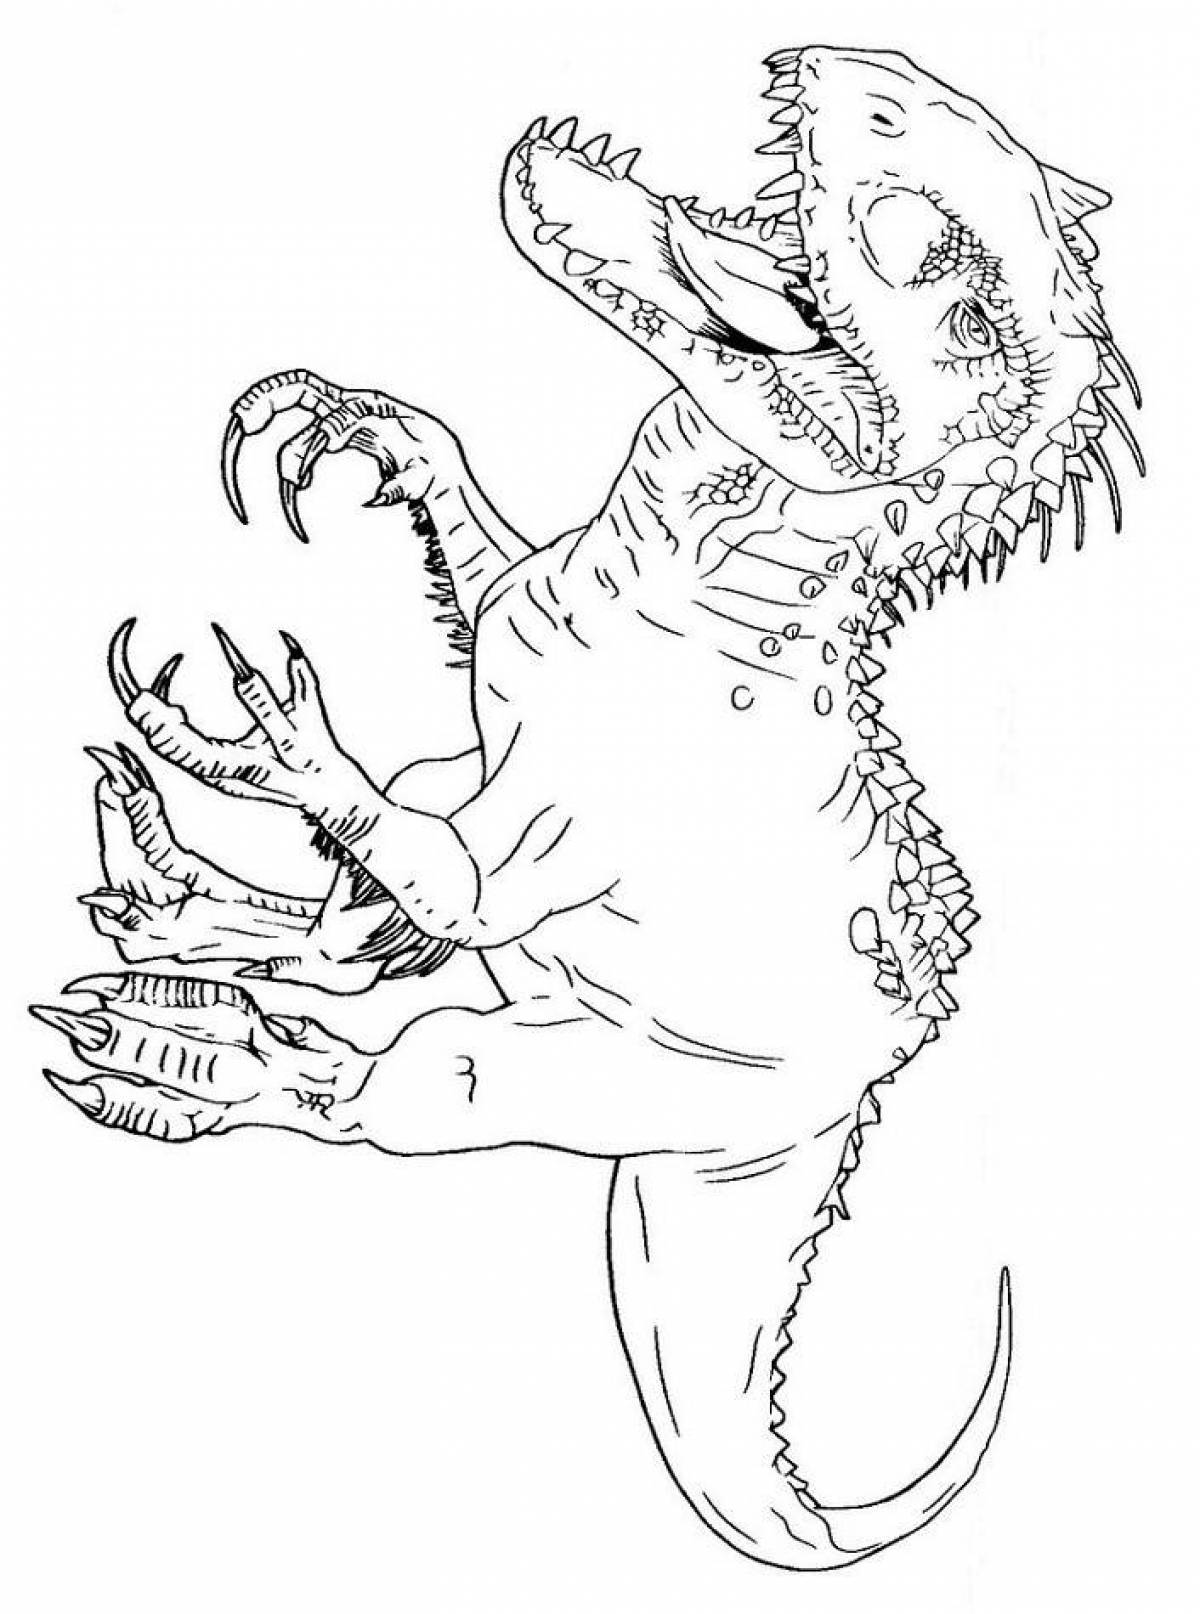 Indominus rex #8